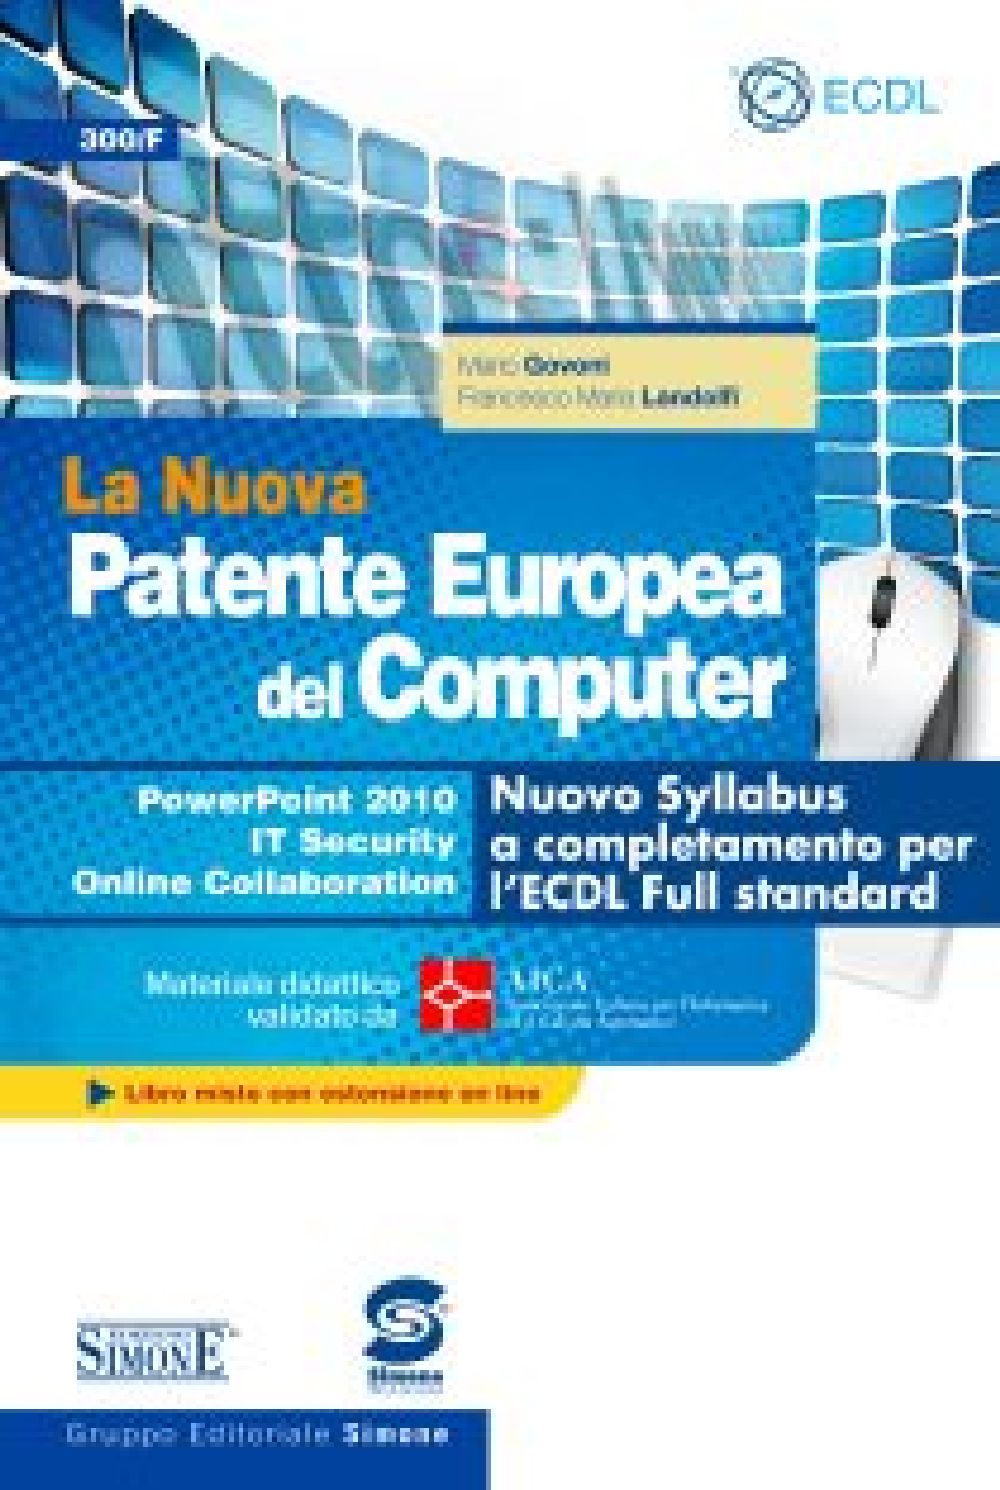 La Nuova Patente Europea del Computer - Nuovo Syllabus a completamento per l'ECDL Full standard -  Power Point 2010 - IT Security - Online Collaboration - 300/F